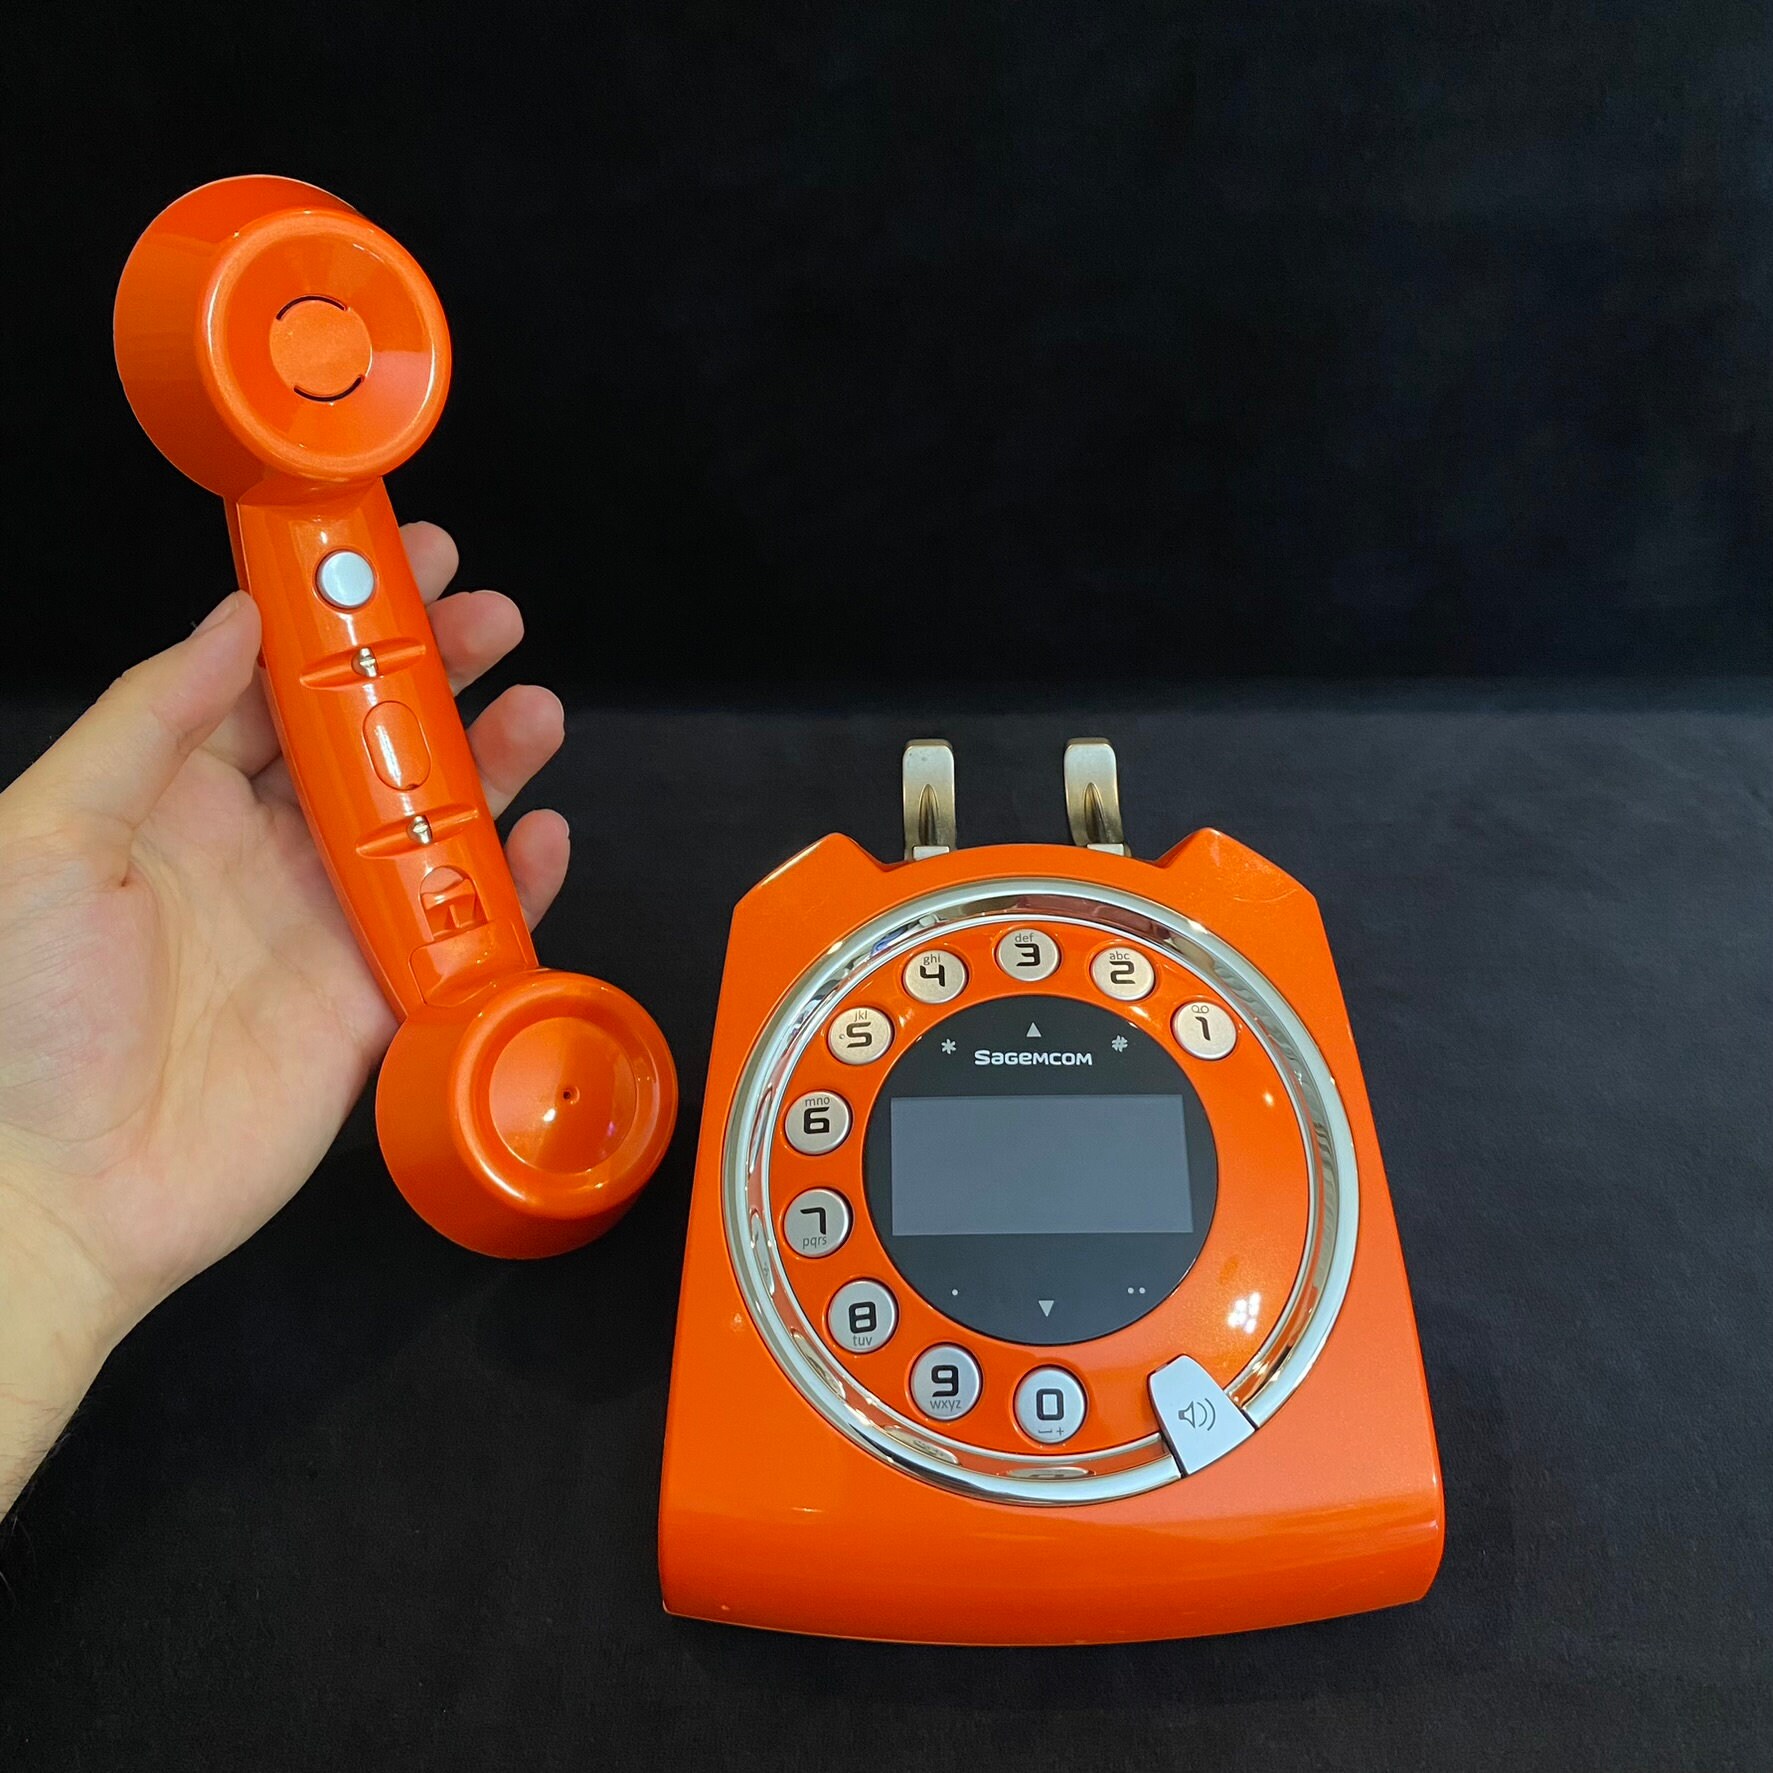 Téléphone DECT D790 : après le modèle néo-rétro Sixty, Sagemcom s